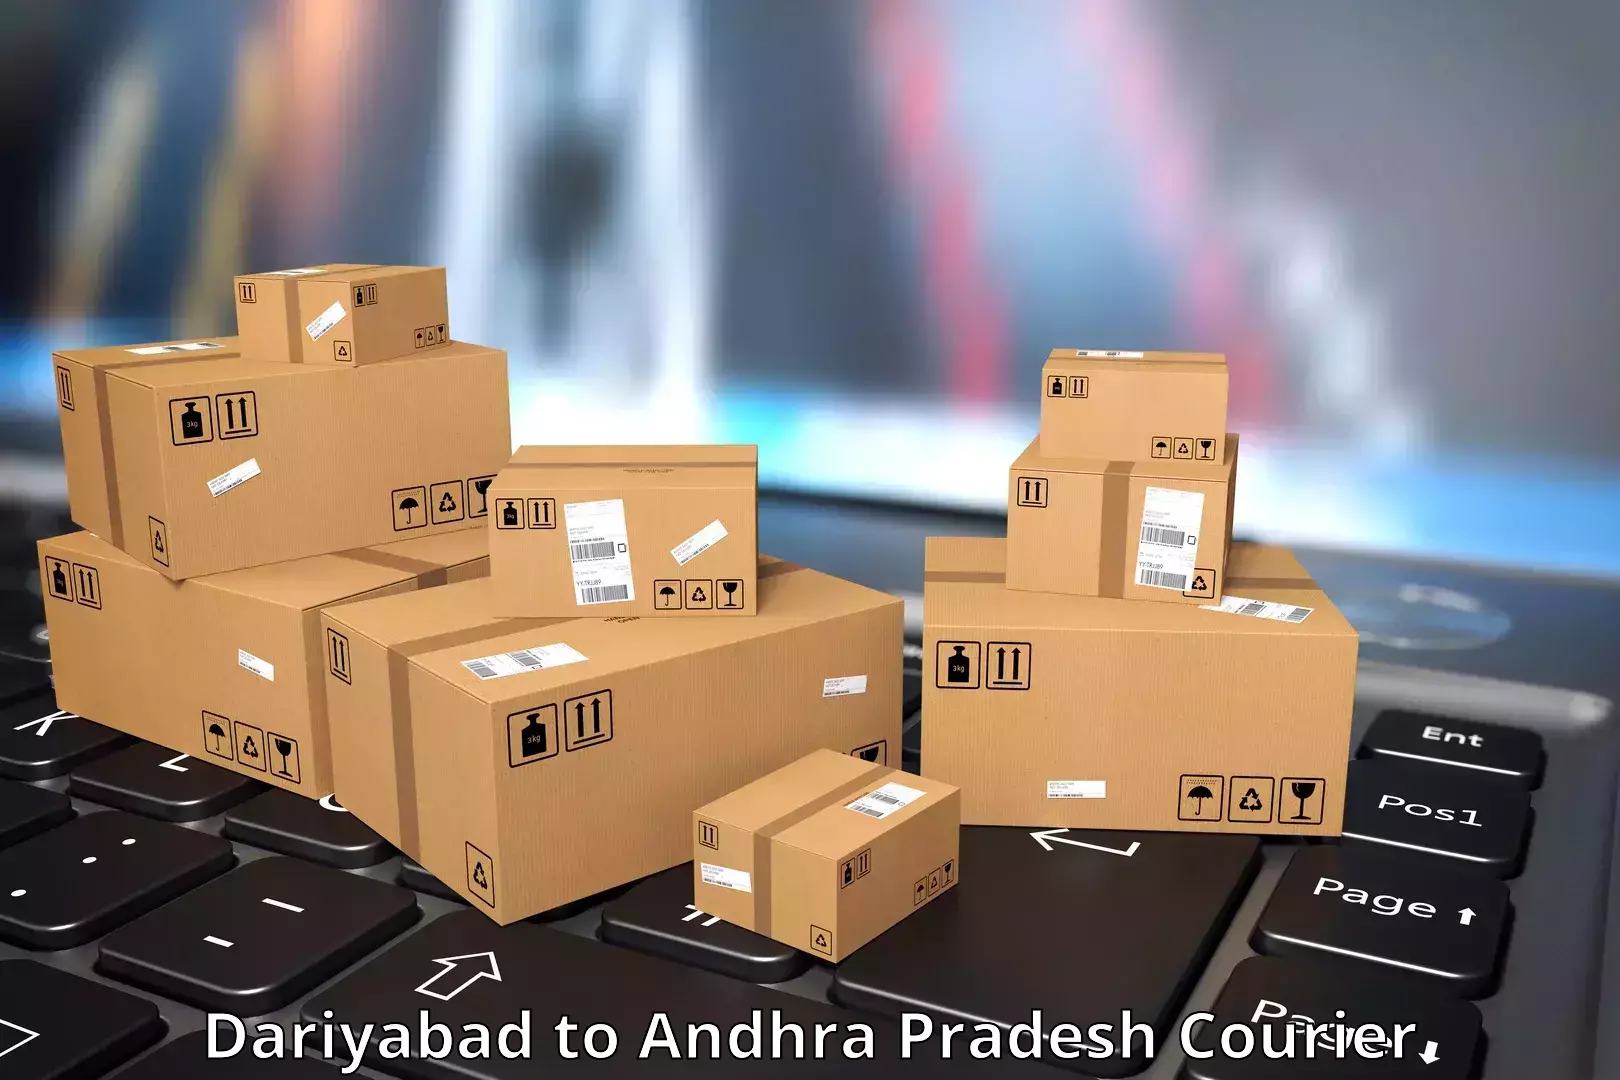 Cargo courier service Dariyabad to Bapatla